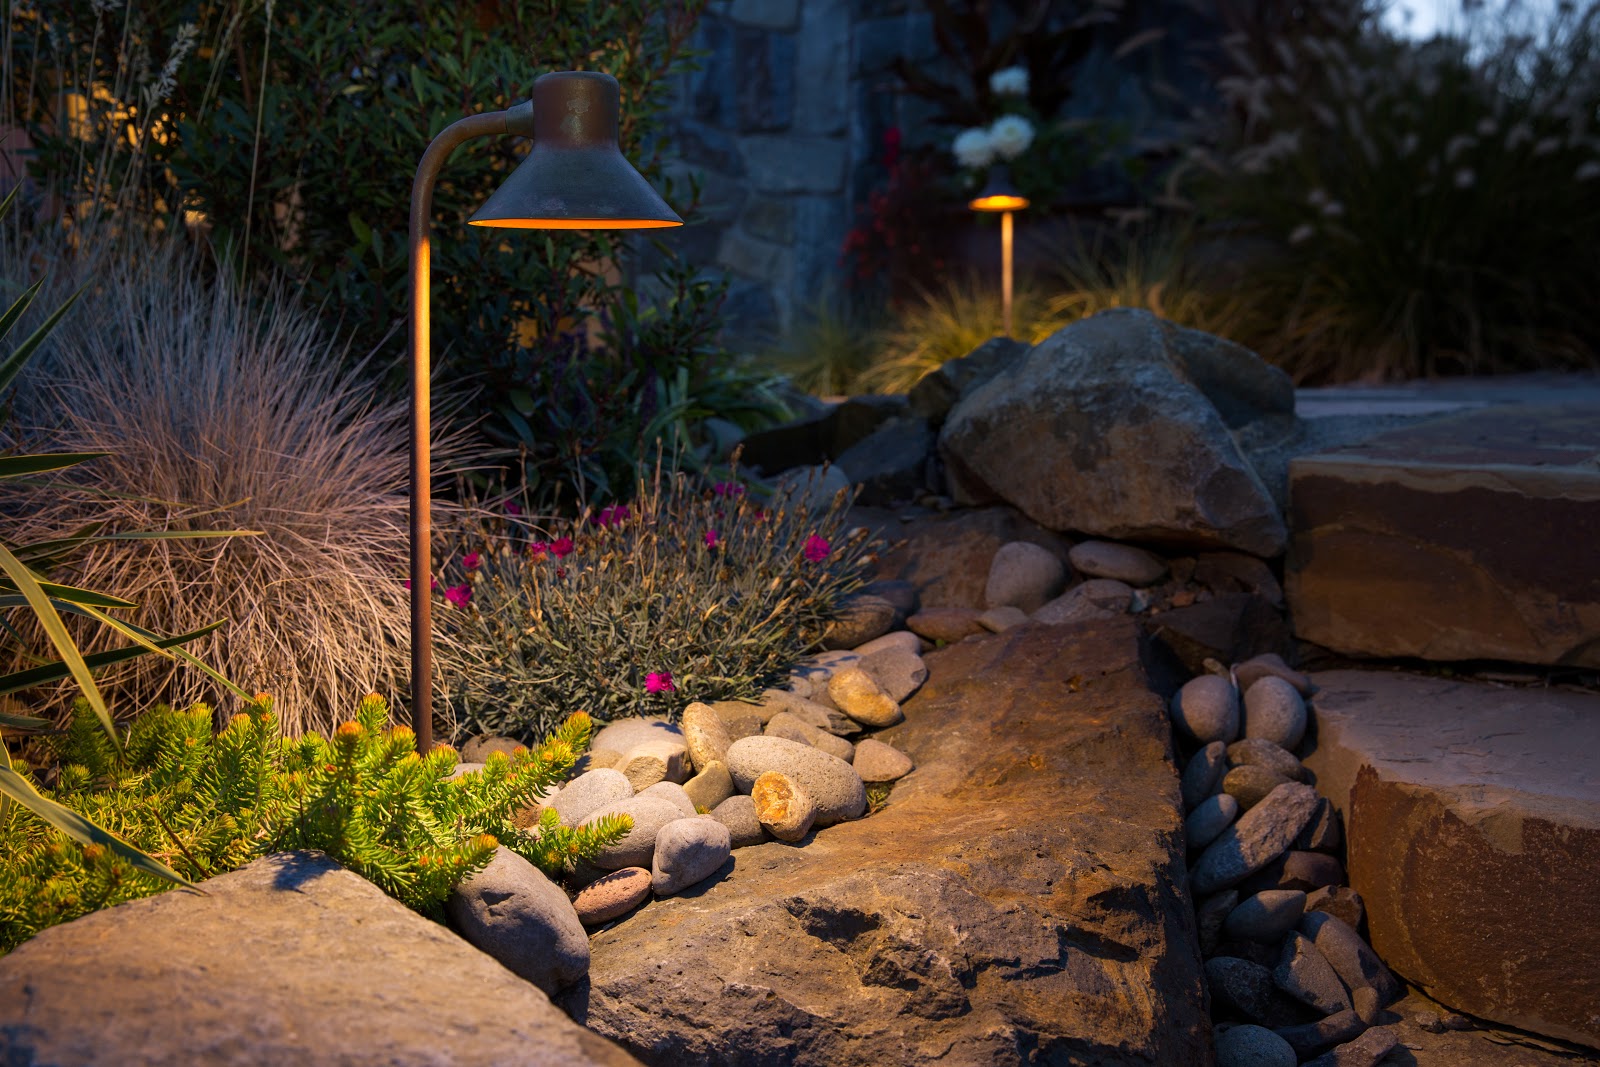 Thiết kế đèn hợp phong thủy cho sân vườn nhà bạn